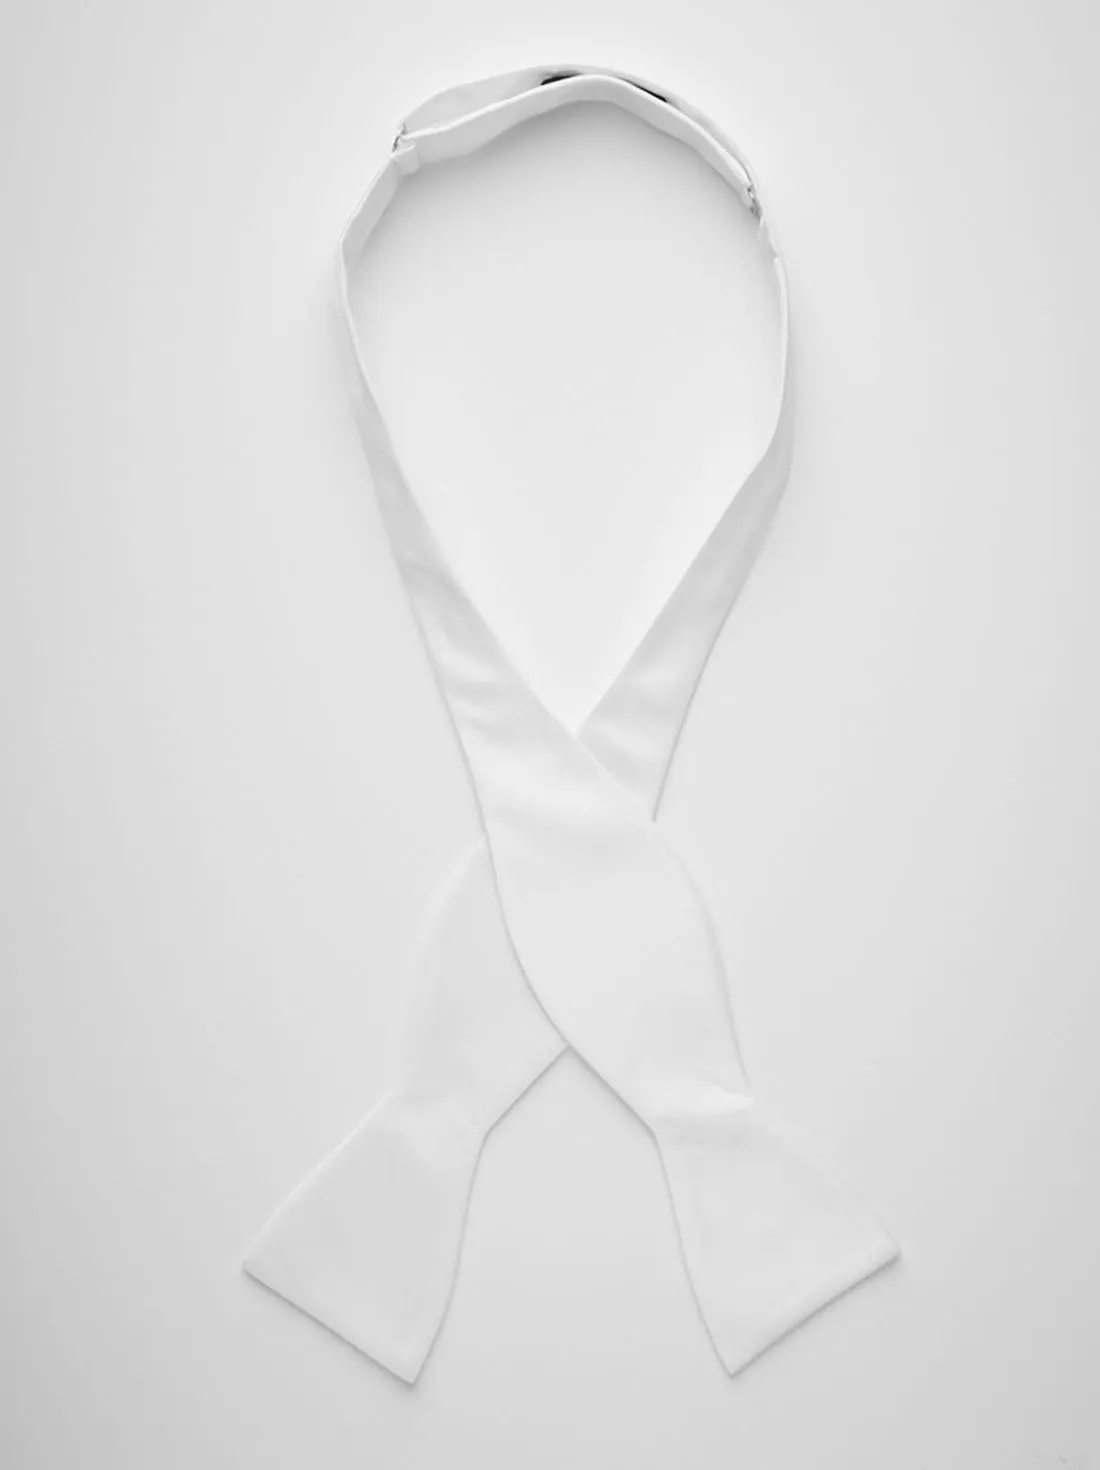 White Bow Tie Plain 